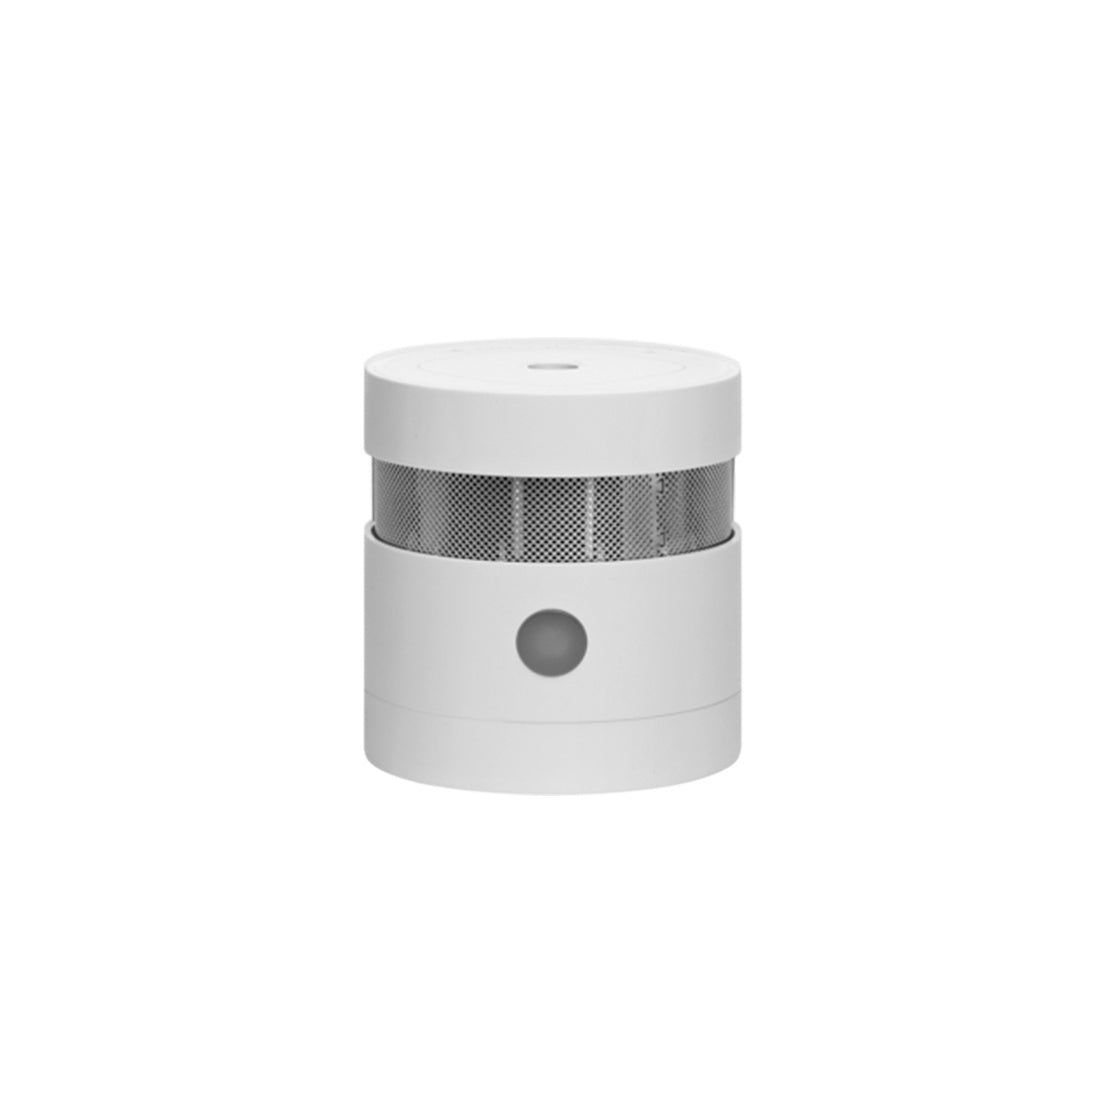 AduroSmart Smart Zigbee Smoke Detector